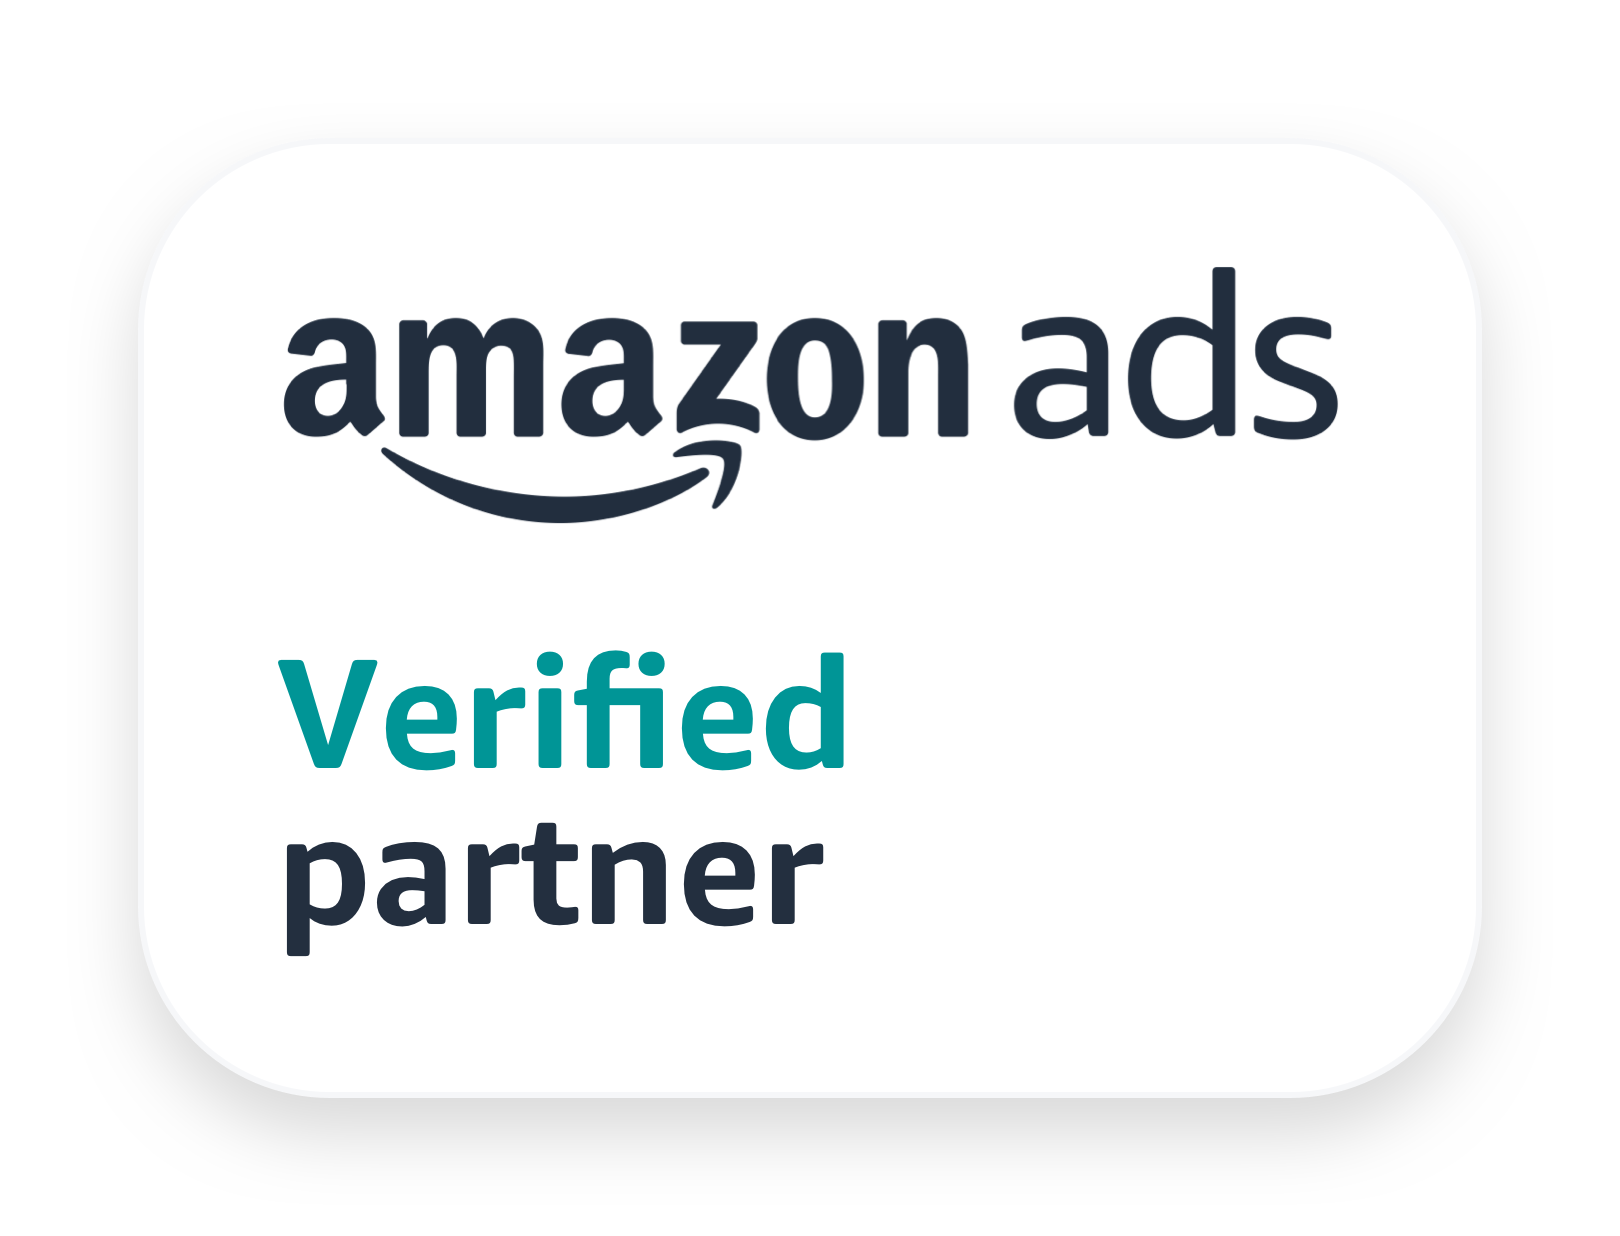 Rome, Lazio, Italy : L’agence Digital Angels remporte le prix Amazon ads Partner